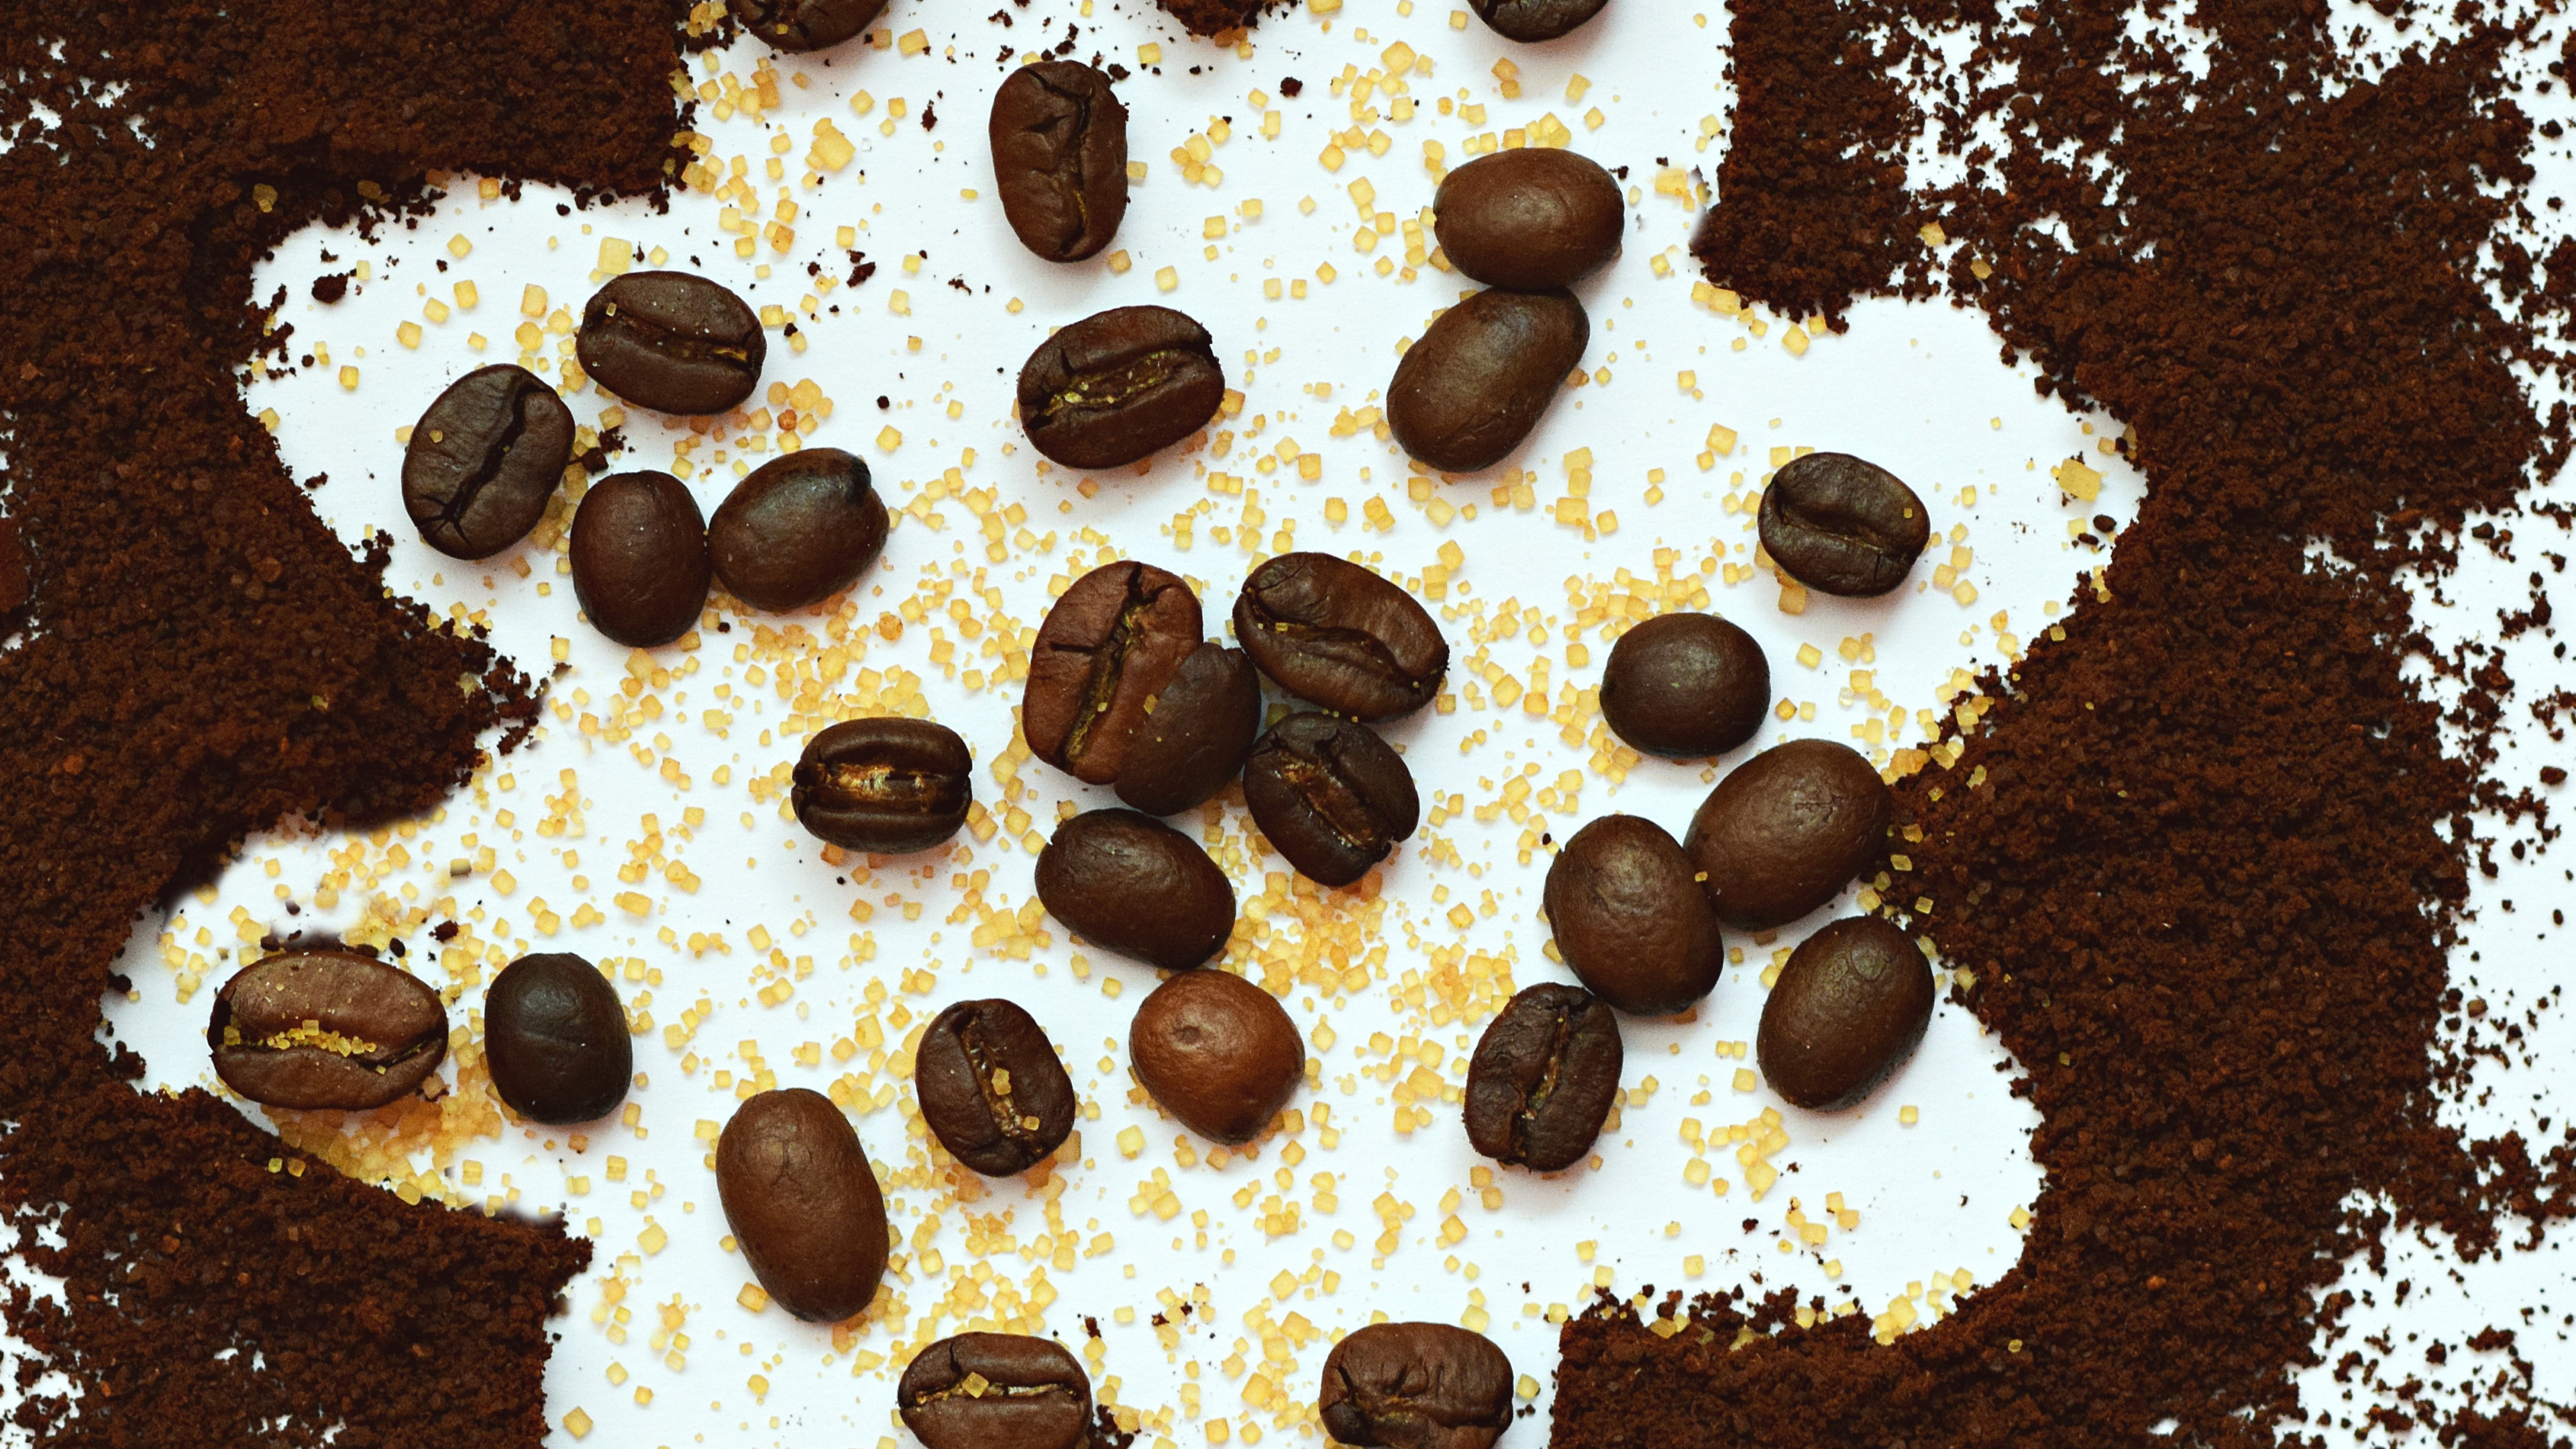 咖啡豆, 食品, 巧克力, 甜点, 巧克力芯片 壁纸 3840x2160 允许